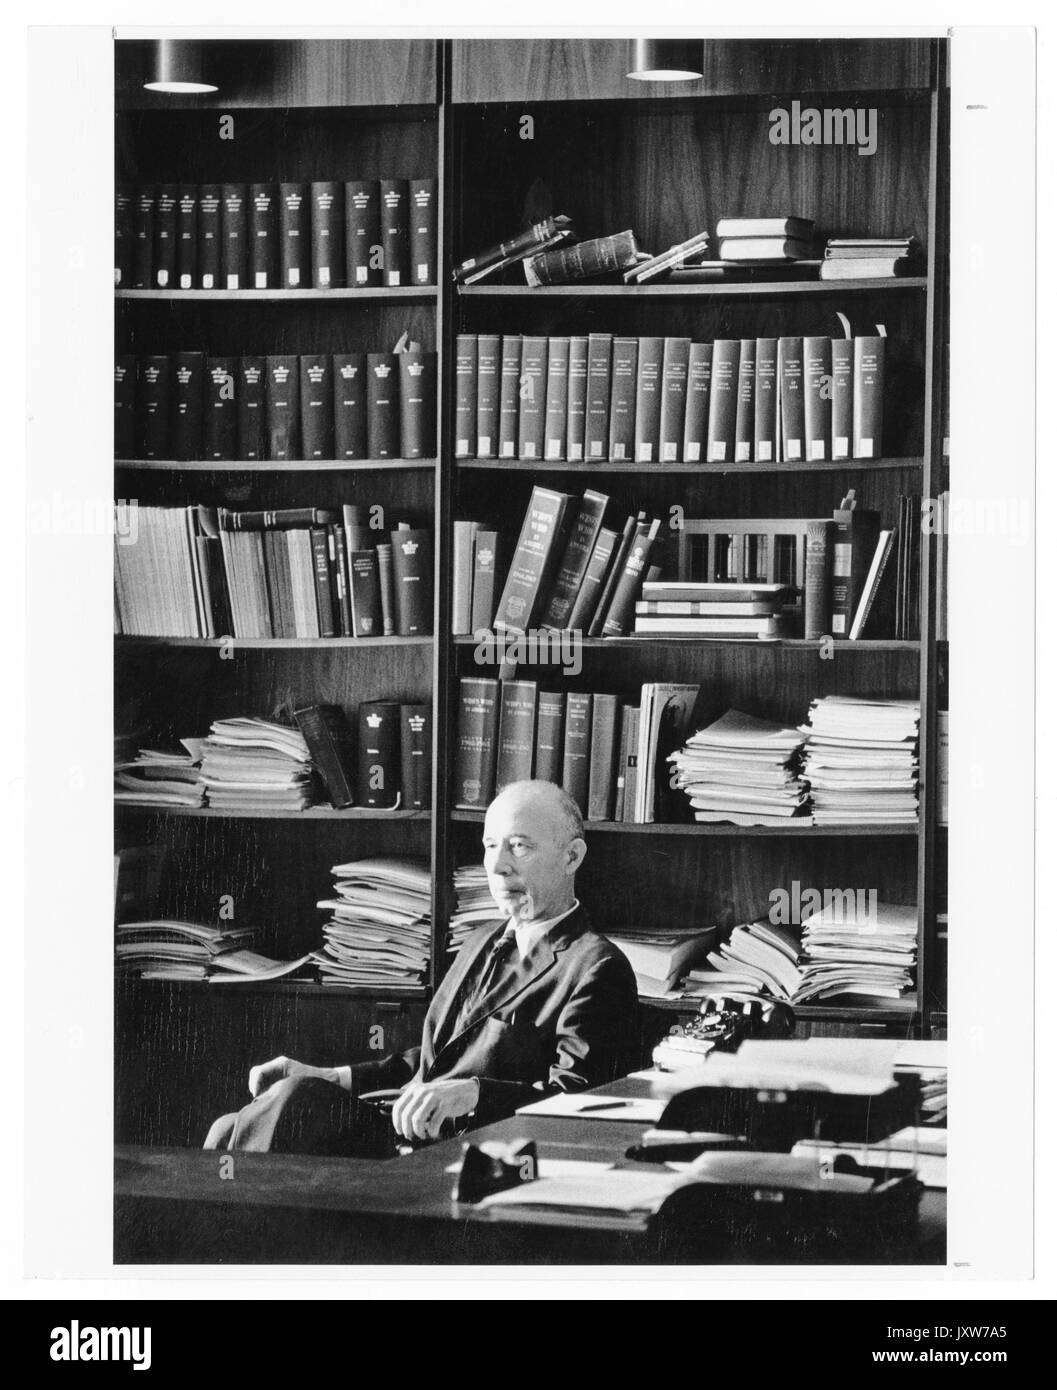 John hallock Berthel, portrait Fotografie, Sitzen, Taille, drei Viertel sehen, hinter dem Schreibtisch und vor Bücherregal, 1960. Stockfoto